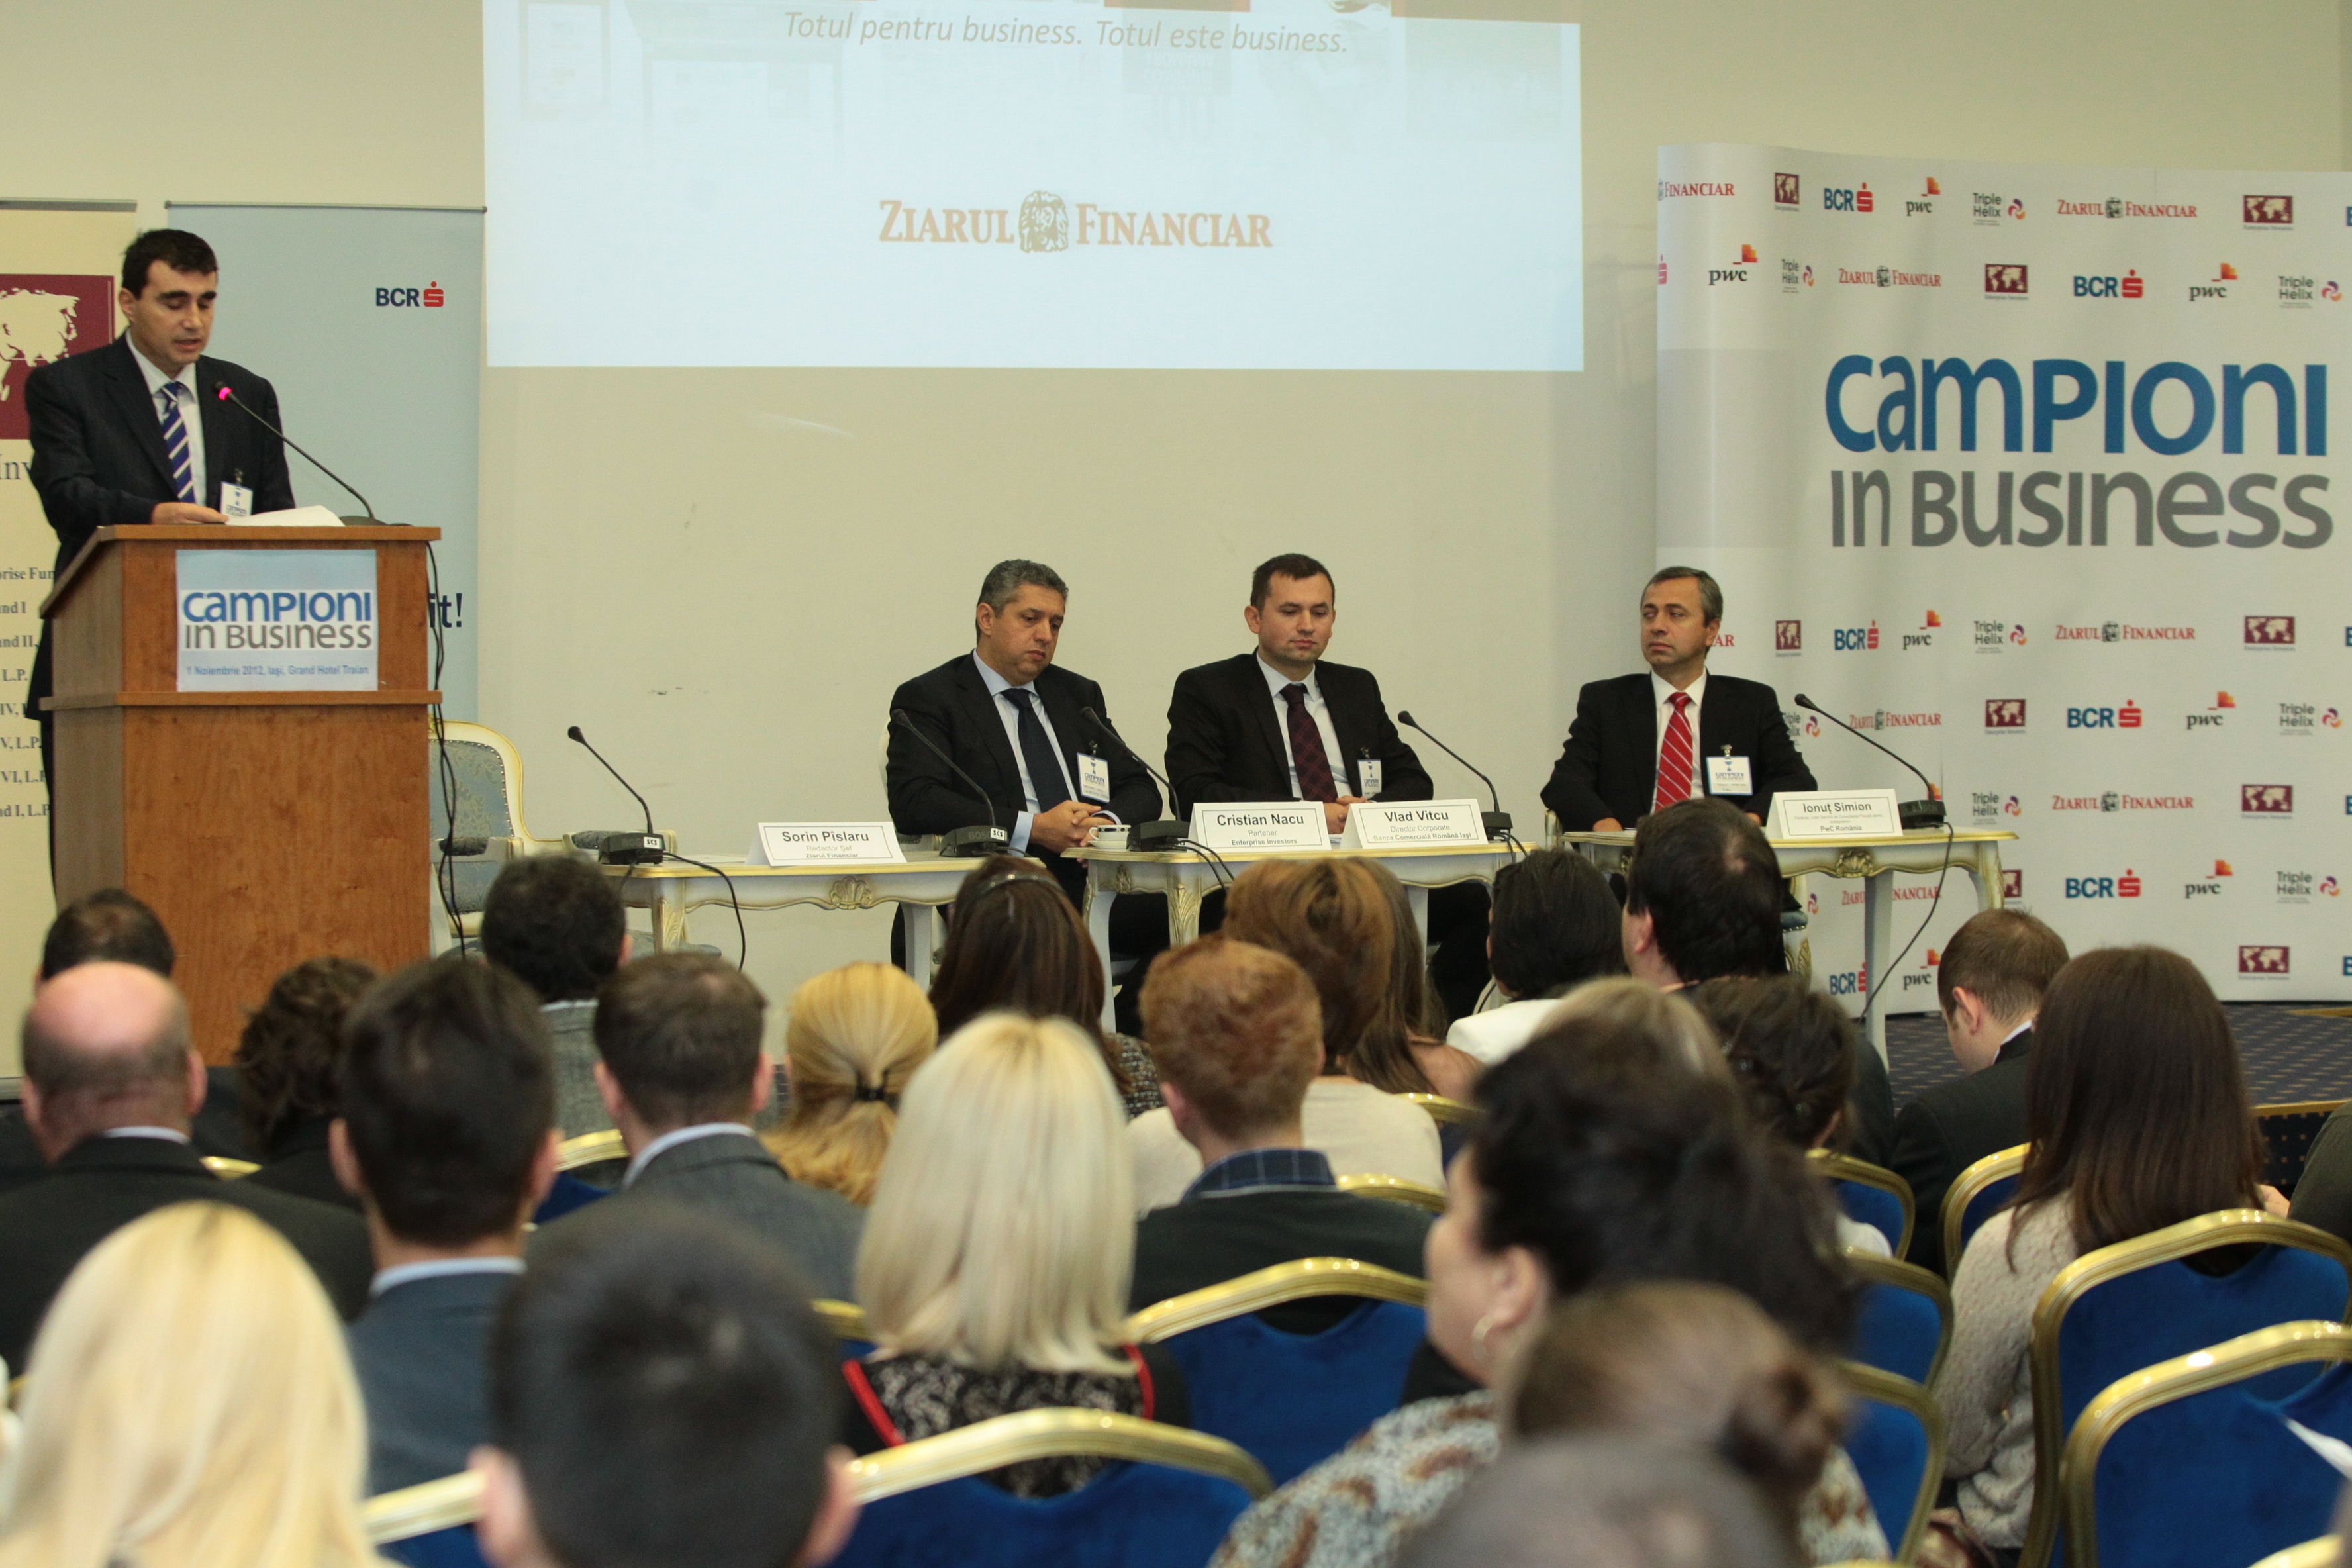 Zece firme din Moldova au fost premiate în cadrul evenimentului "Campioni în Business"